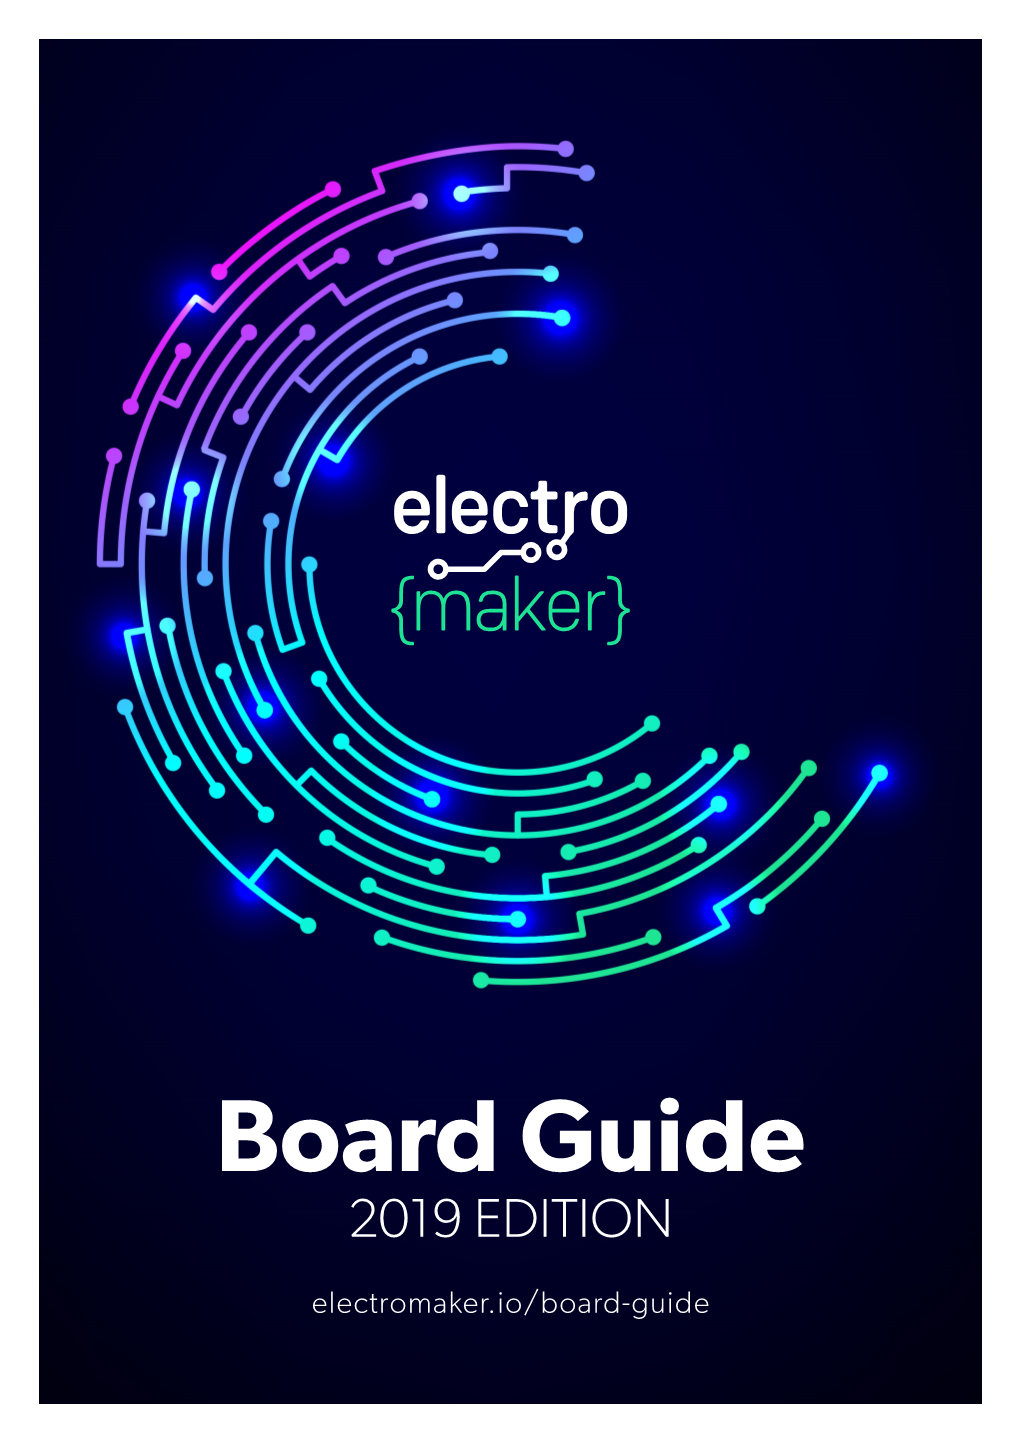 Board Guide 2019 EDITION